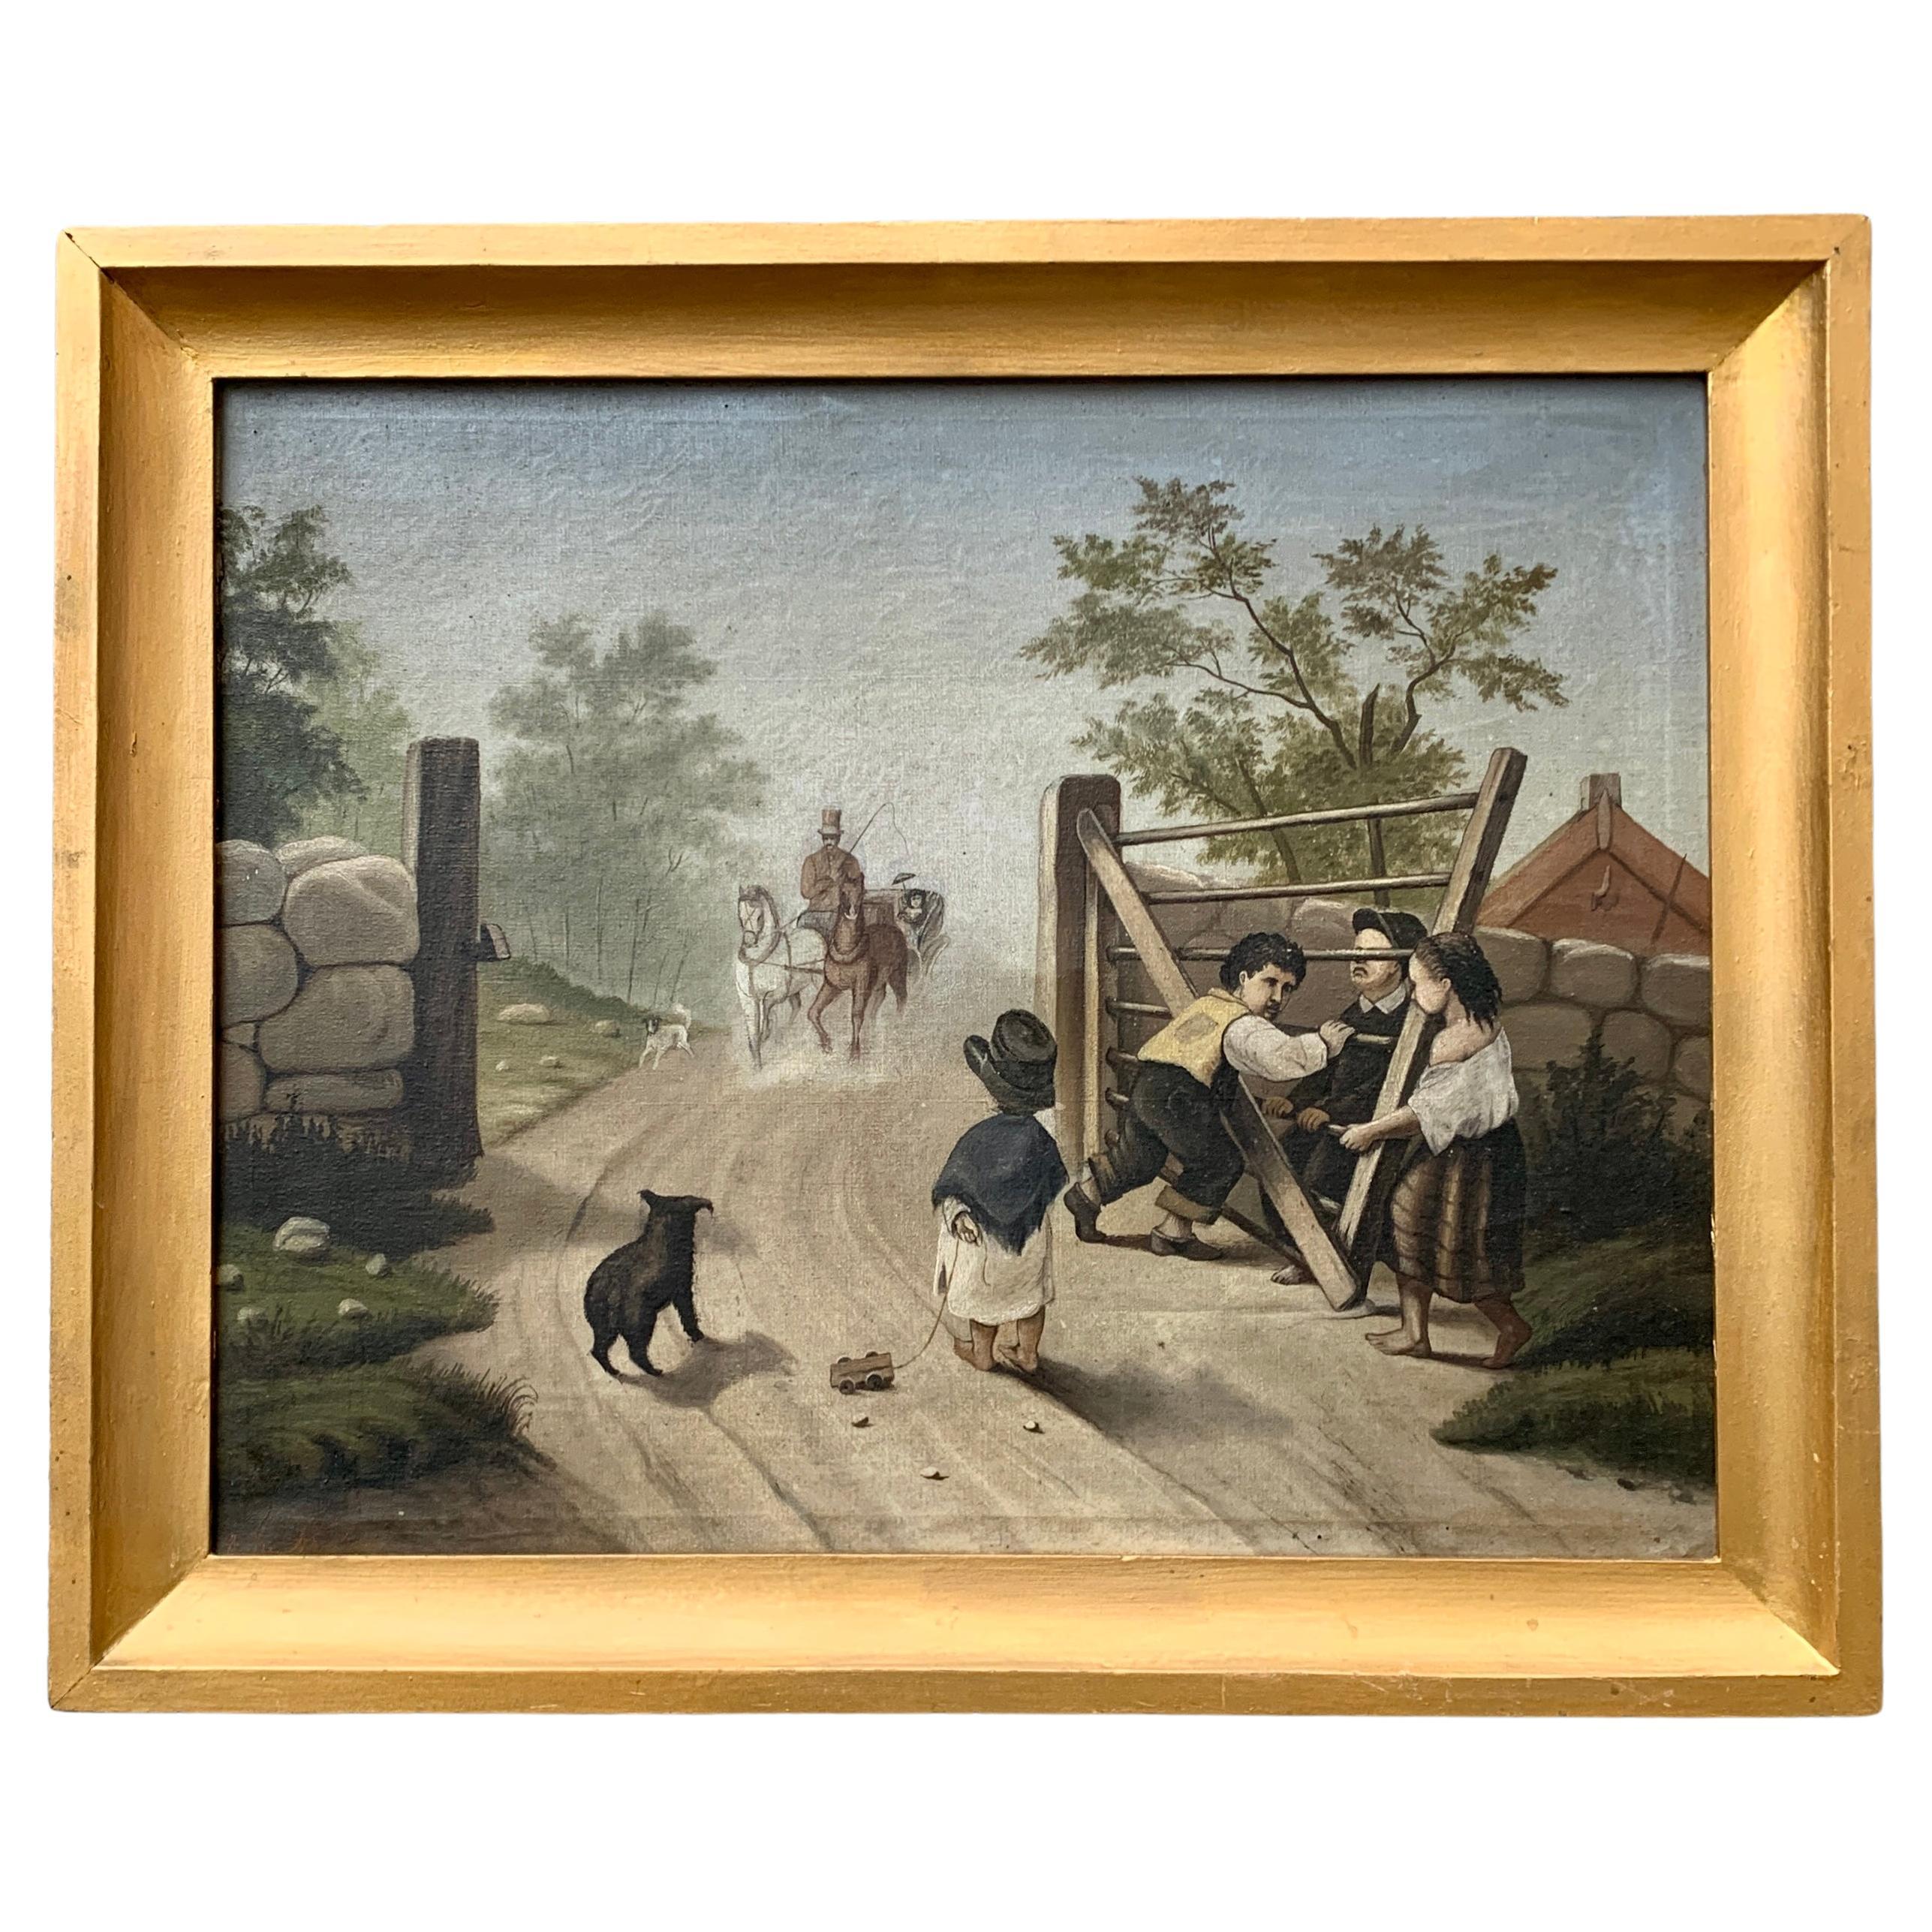 Pintura al óleo de arte popular sueco del siglo XIX con niños